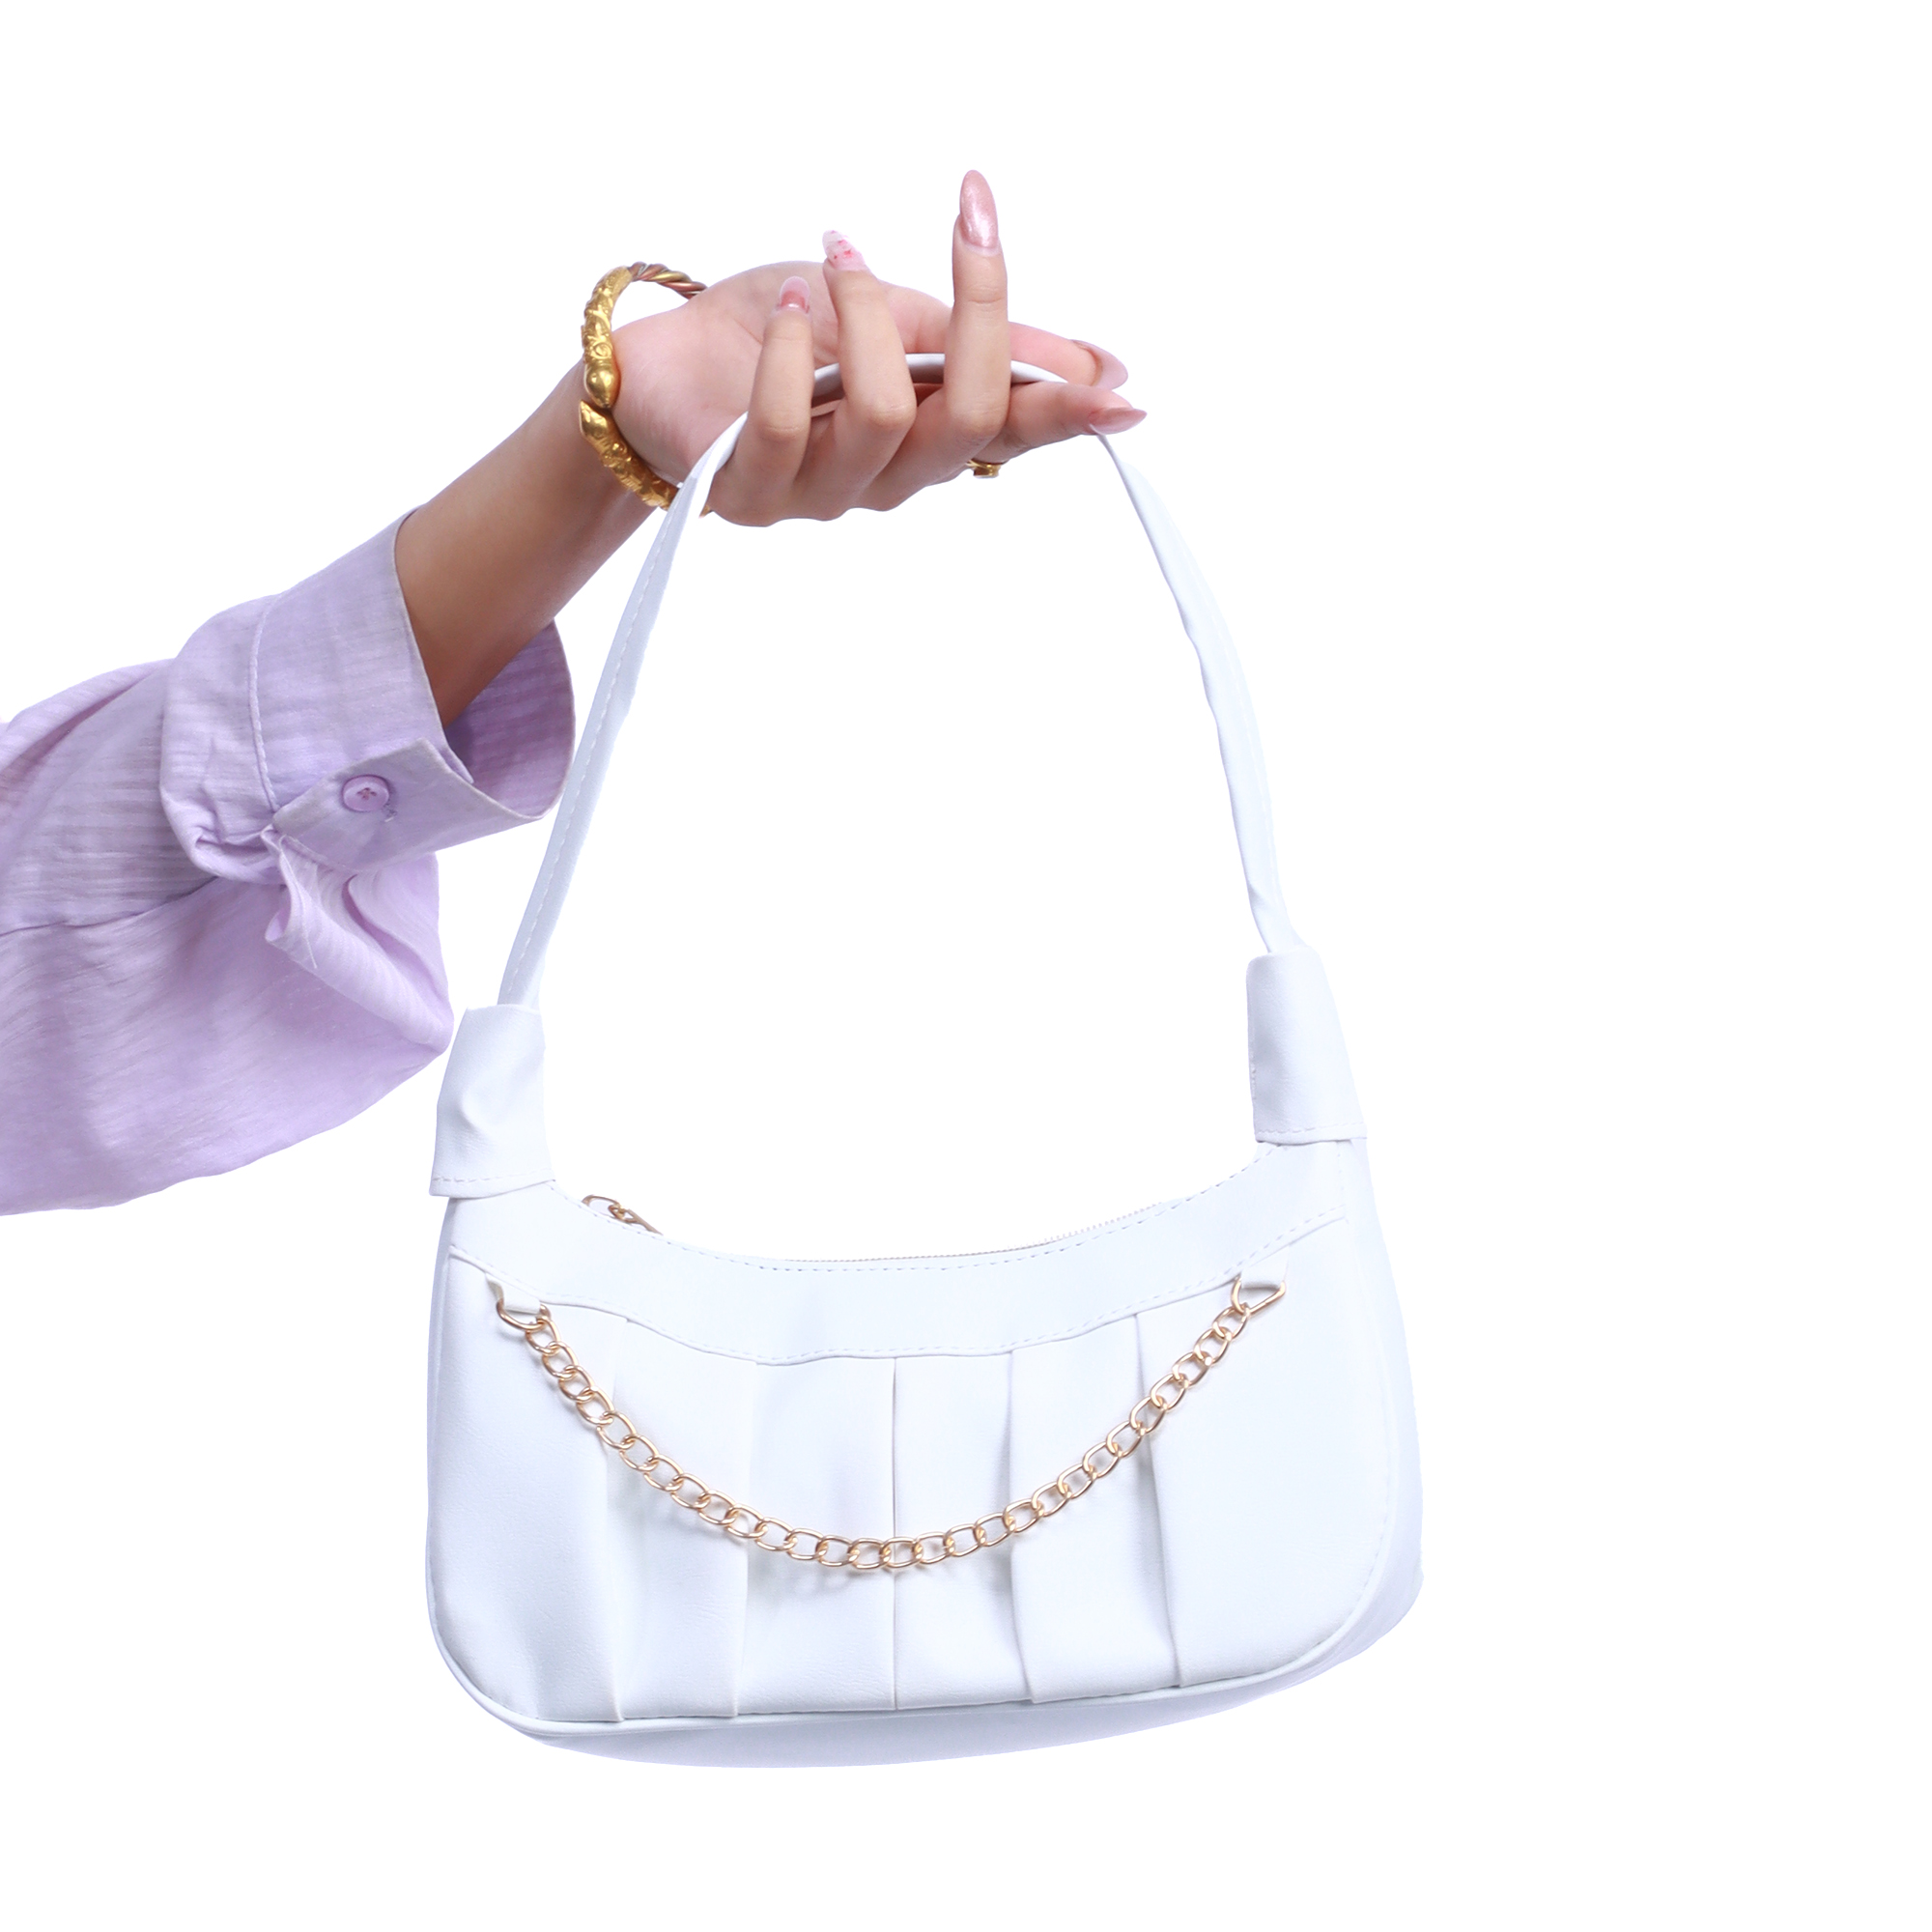 Women's Bags - Buy Bags Online for Women | Westside